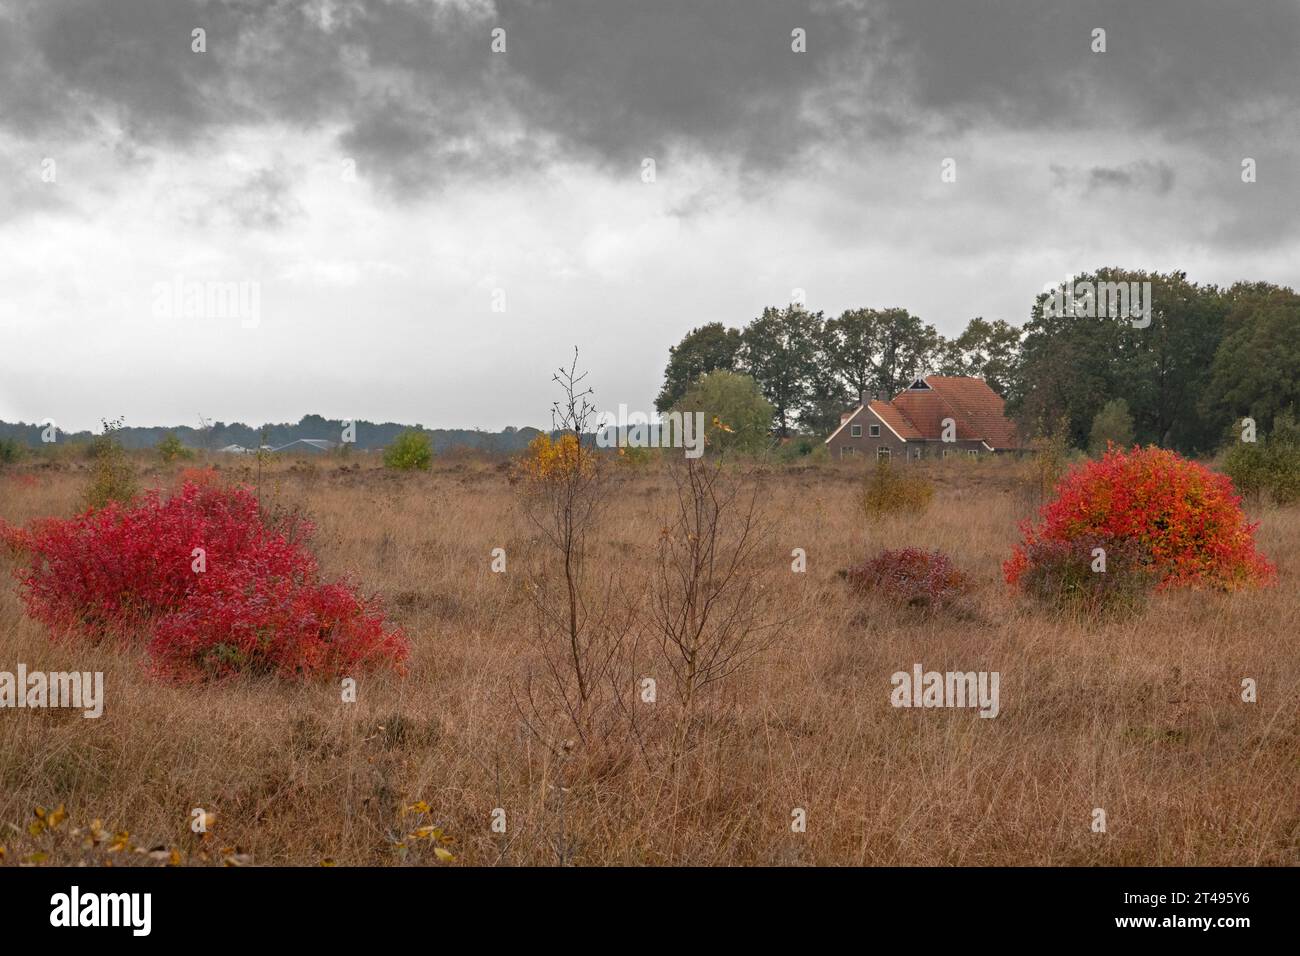 Nördliche Hochbusch-Blaubeersträucher, hellrote Blätter im Herbst, in grasbewachsener Heidefläche, im Hintergrund ein Bauernhof mit roten Dachziegeln Stockfoto